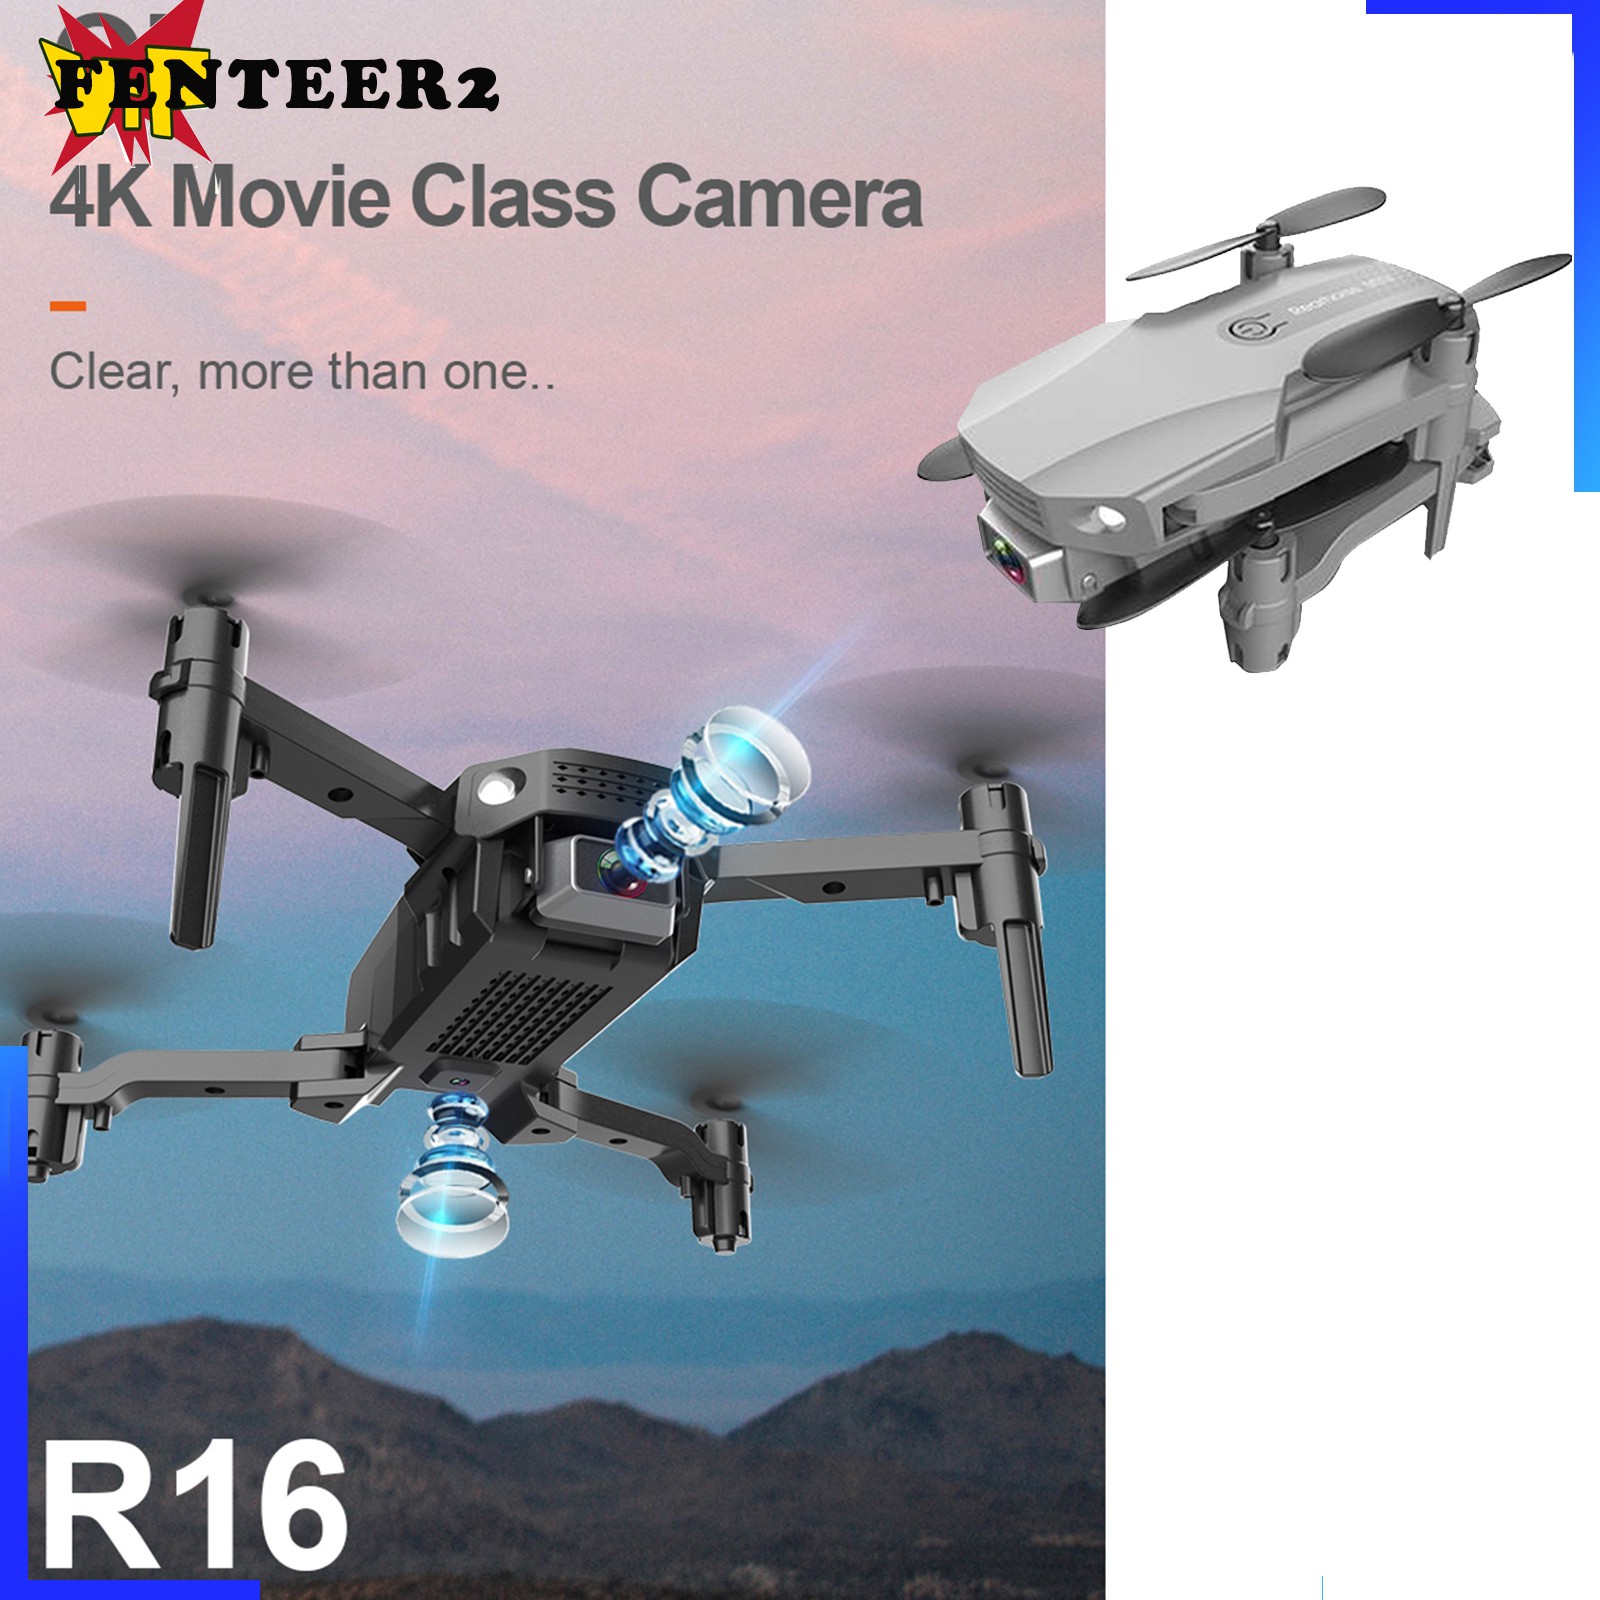 (Fenteer2 3c) Drone Mini Có Thể Gấp Lại 360 Độ Fpv Video Wifi 4k Hd